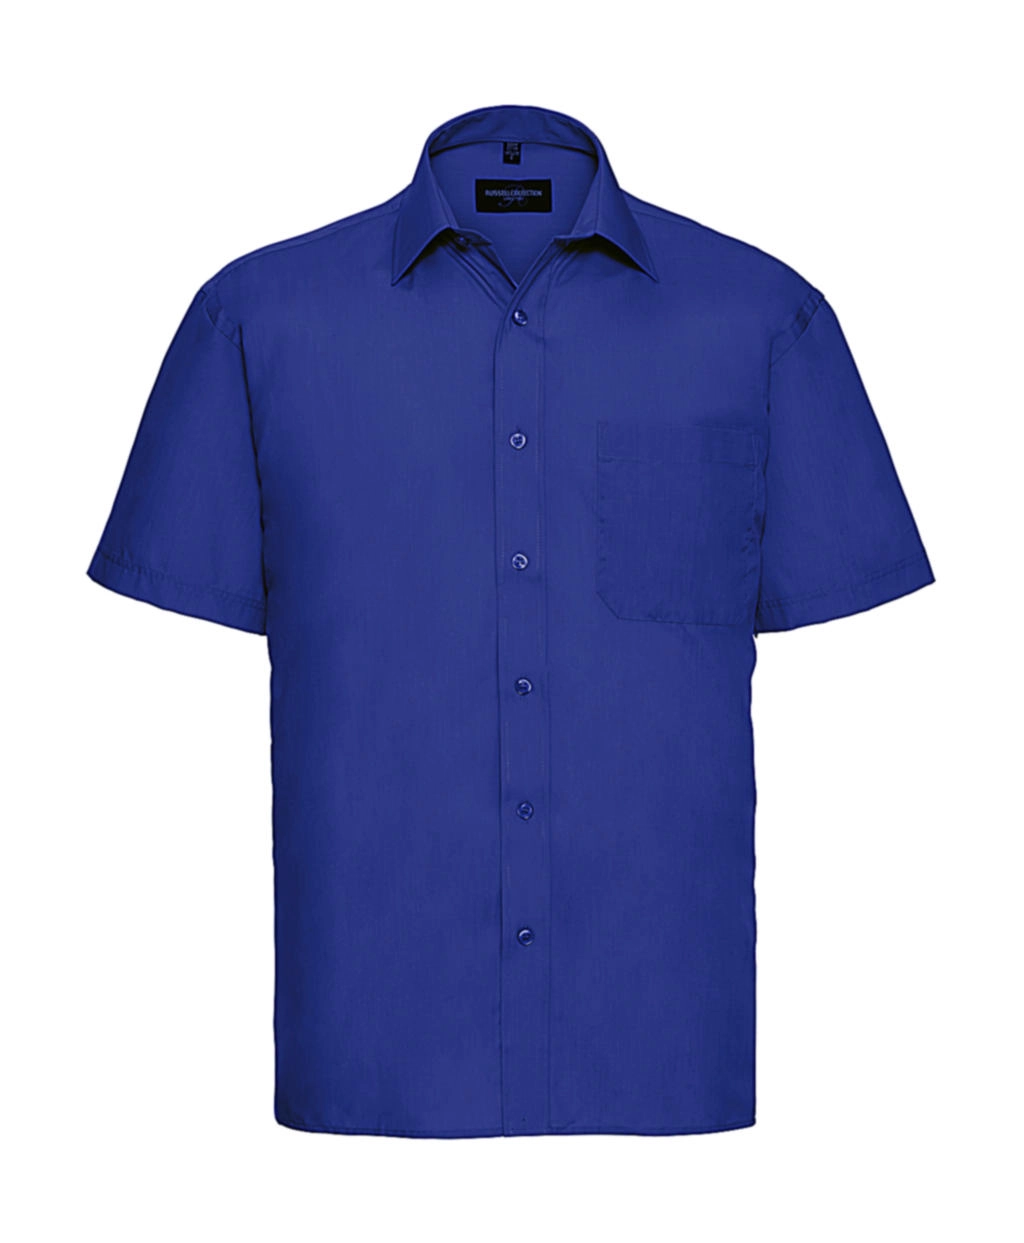 Poplin Shirt zum Besticken und Bedrucken in der Farbe Bright Royal mit Ihren Logo, Schriftzug oder Motiv.